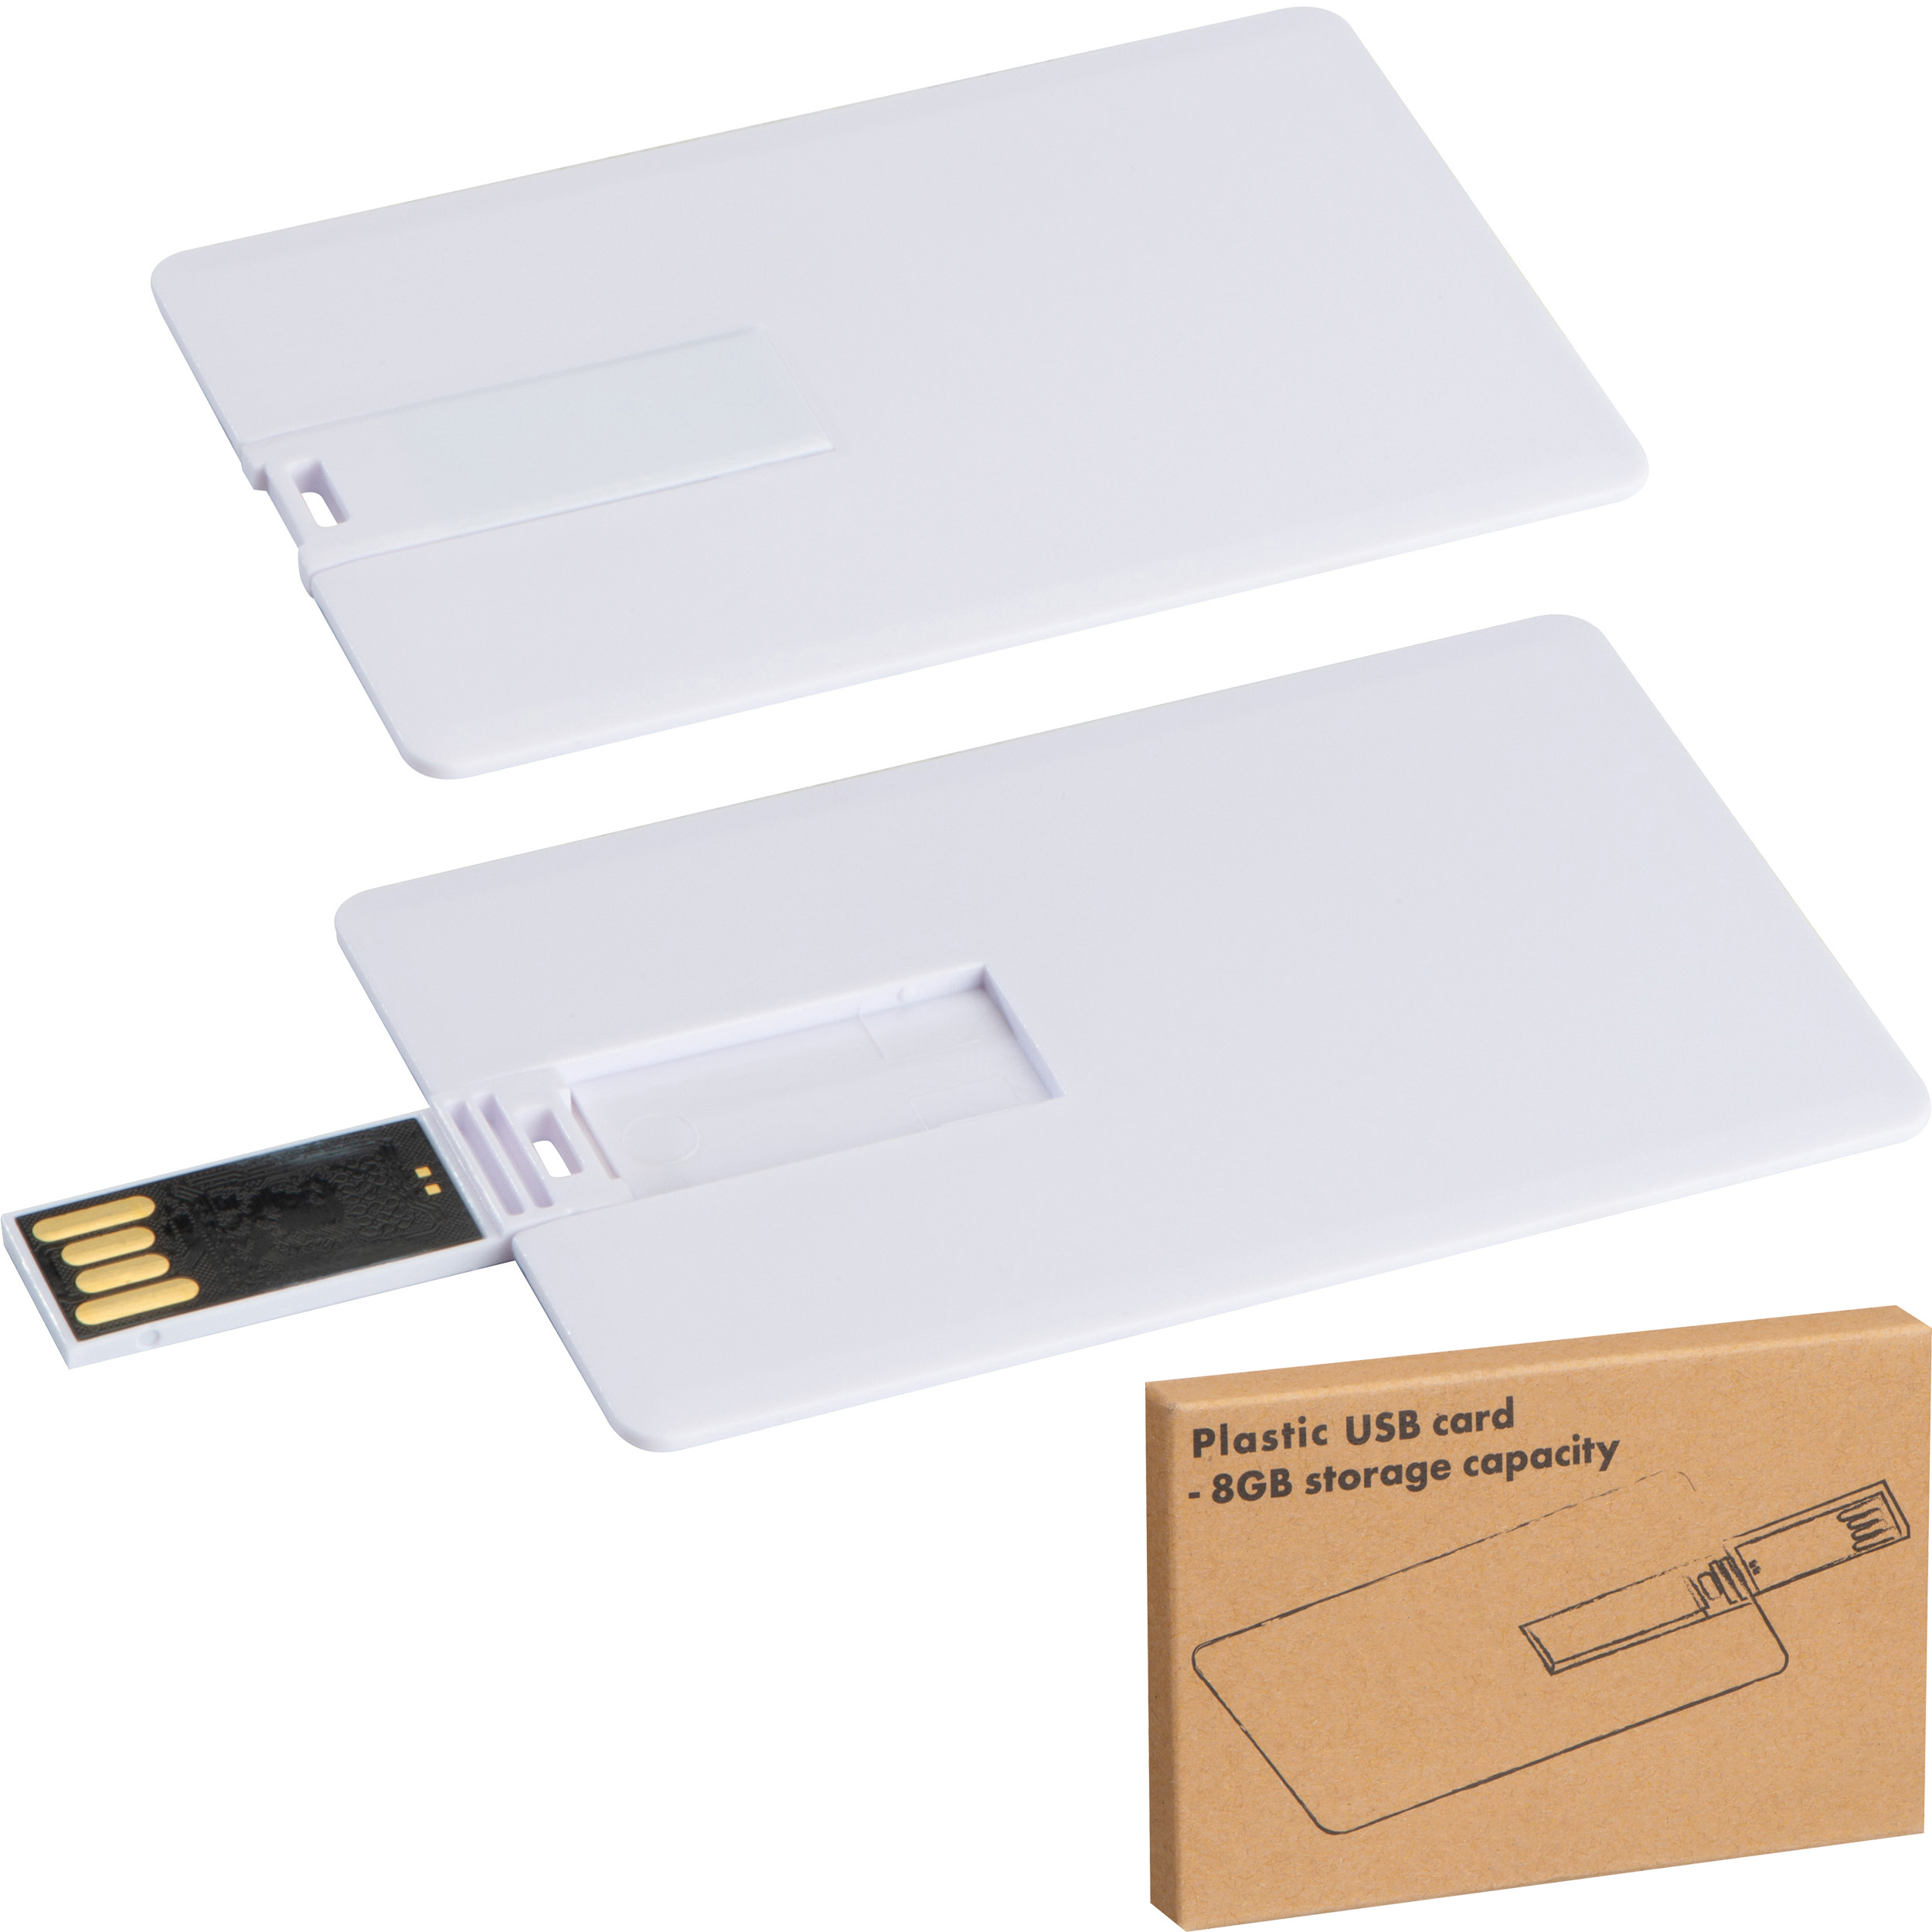 8GB USB Card